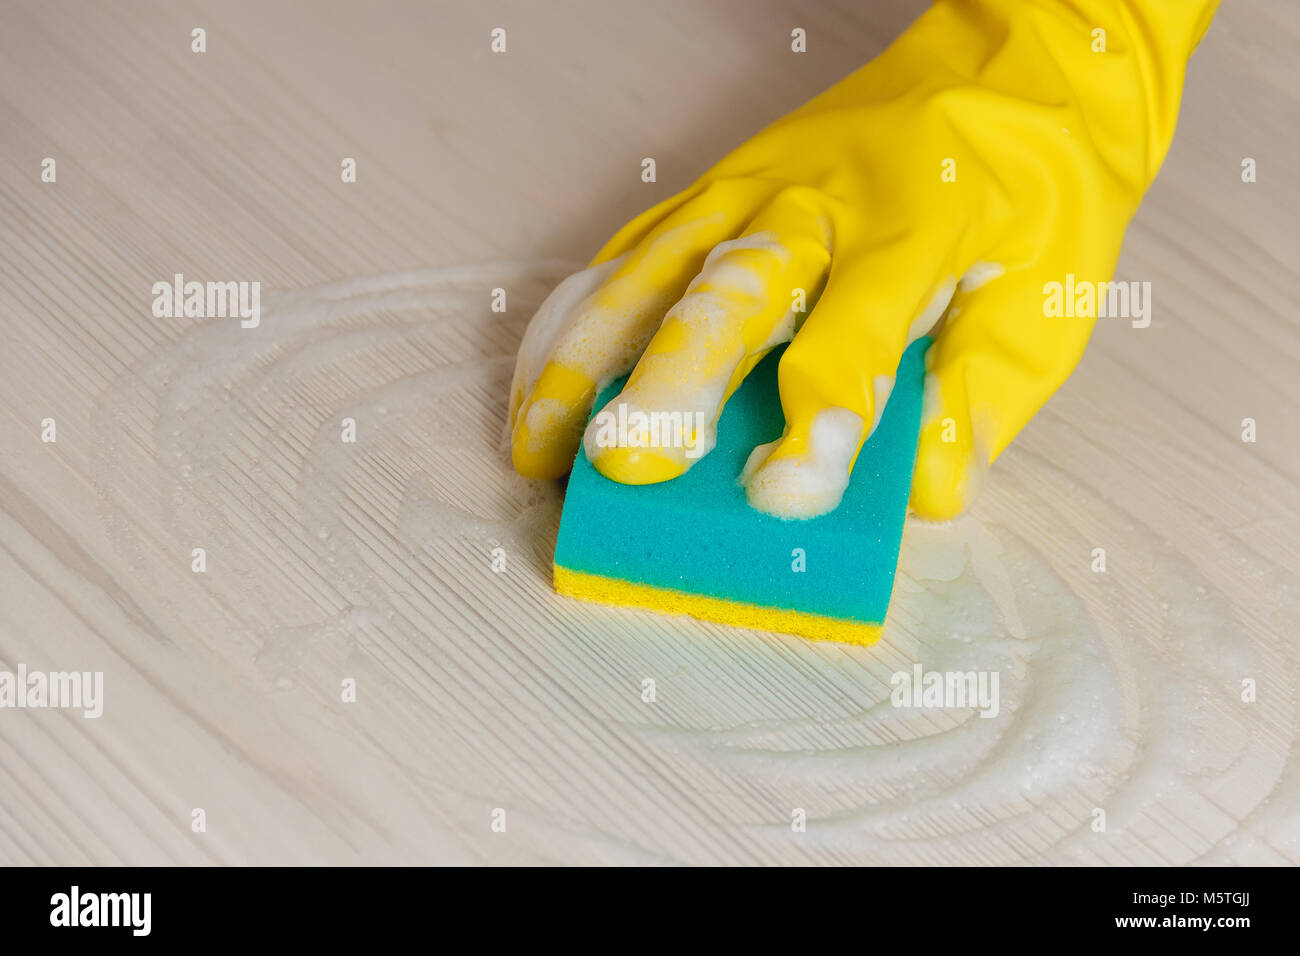 En main de femme gant jaune Tableau moderne en bois Nettoyage avec éponge bleu pour l'entretien ménager et d'entretien de la maison Banque D'Images